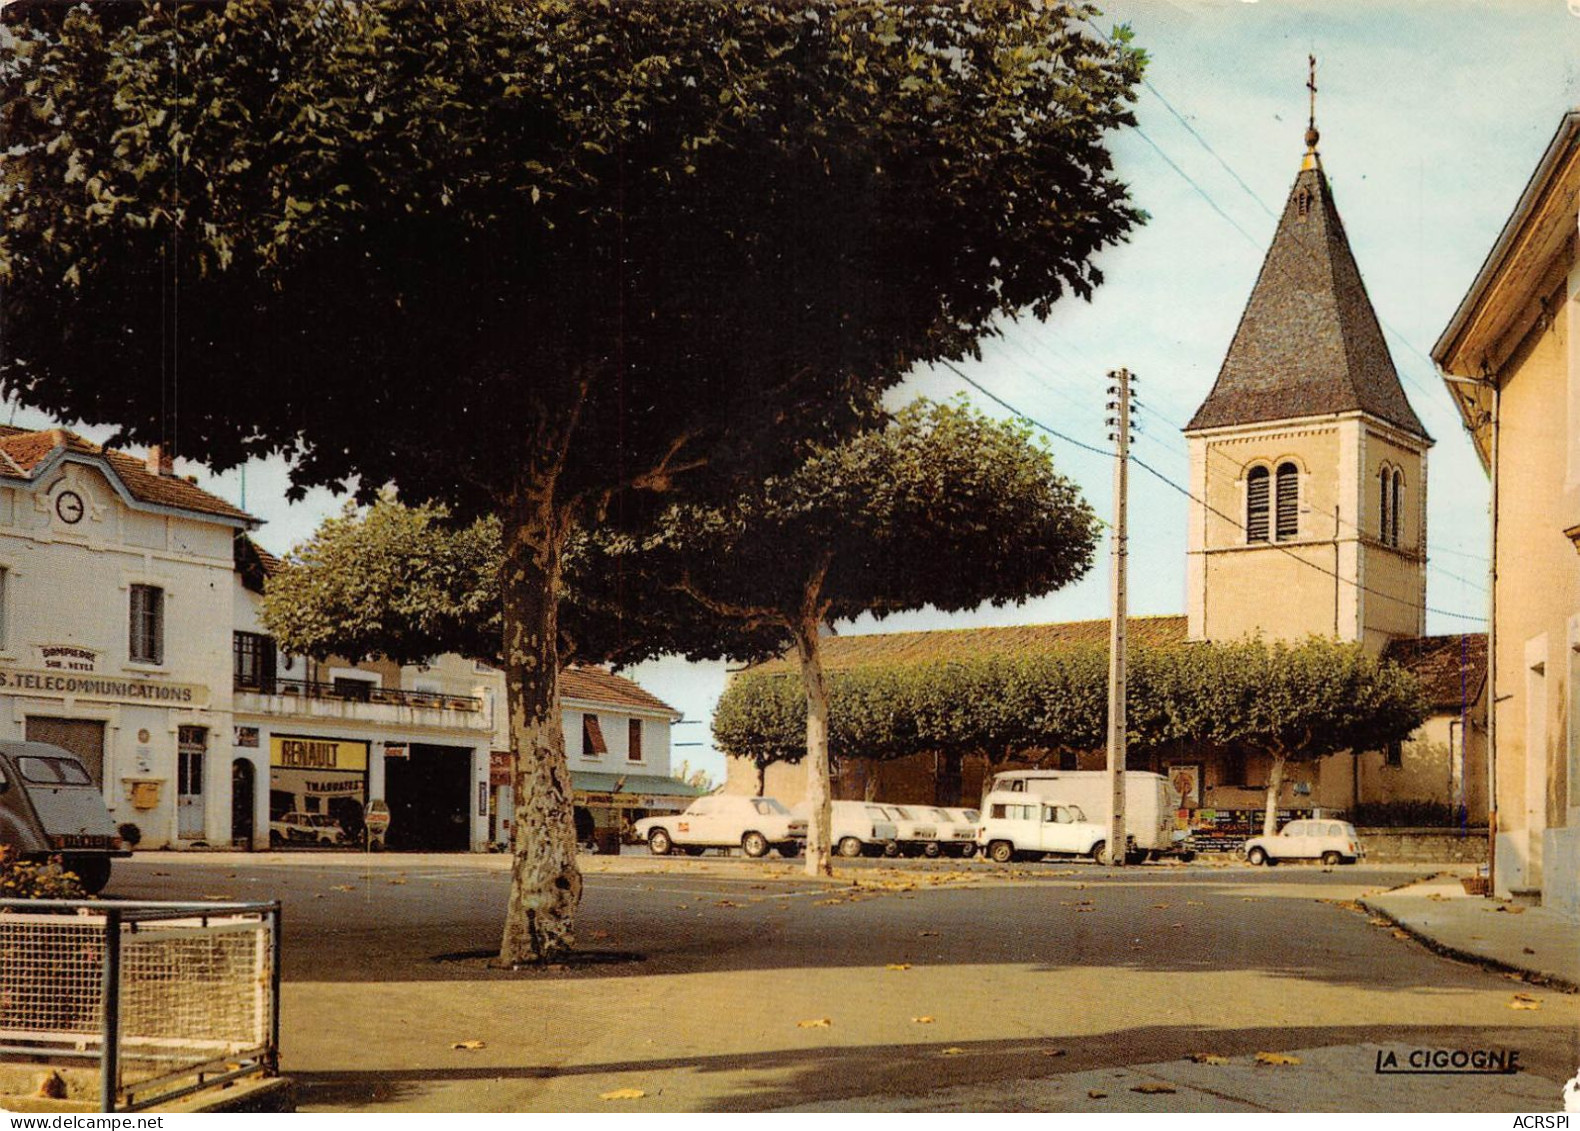 01  Dompierre-sur-Veyle  La Place Garage Renault Et Poste (Scan R/V) N°  43  \OA1051 - Oyonnax